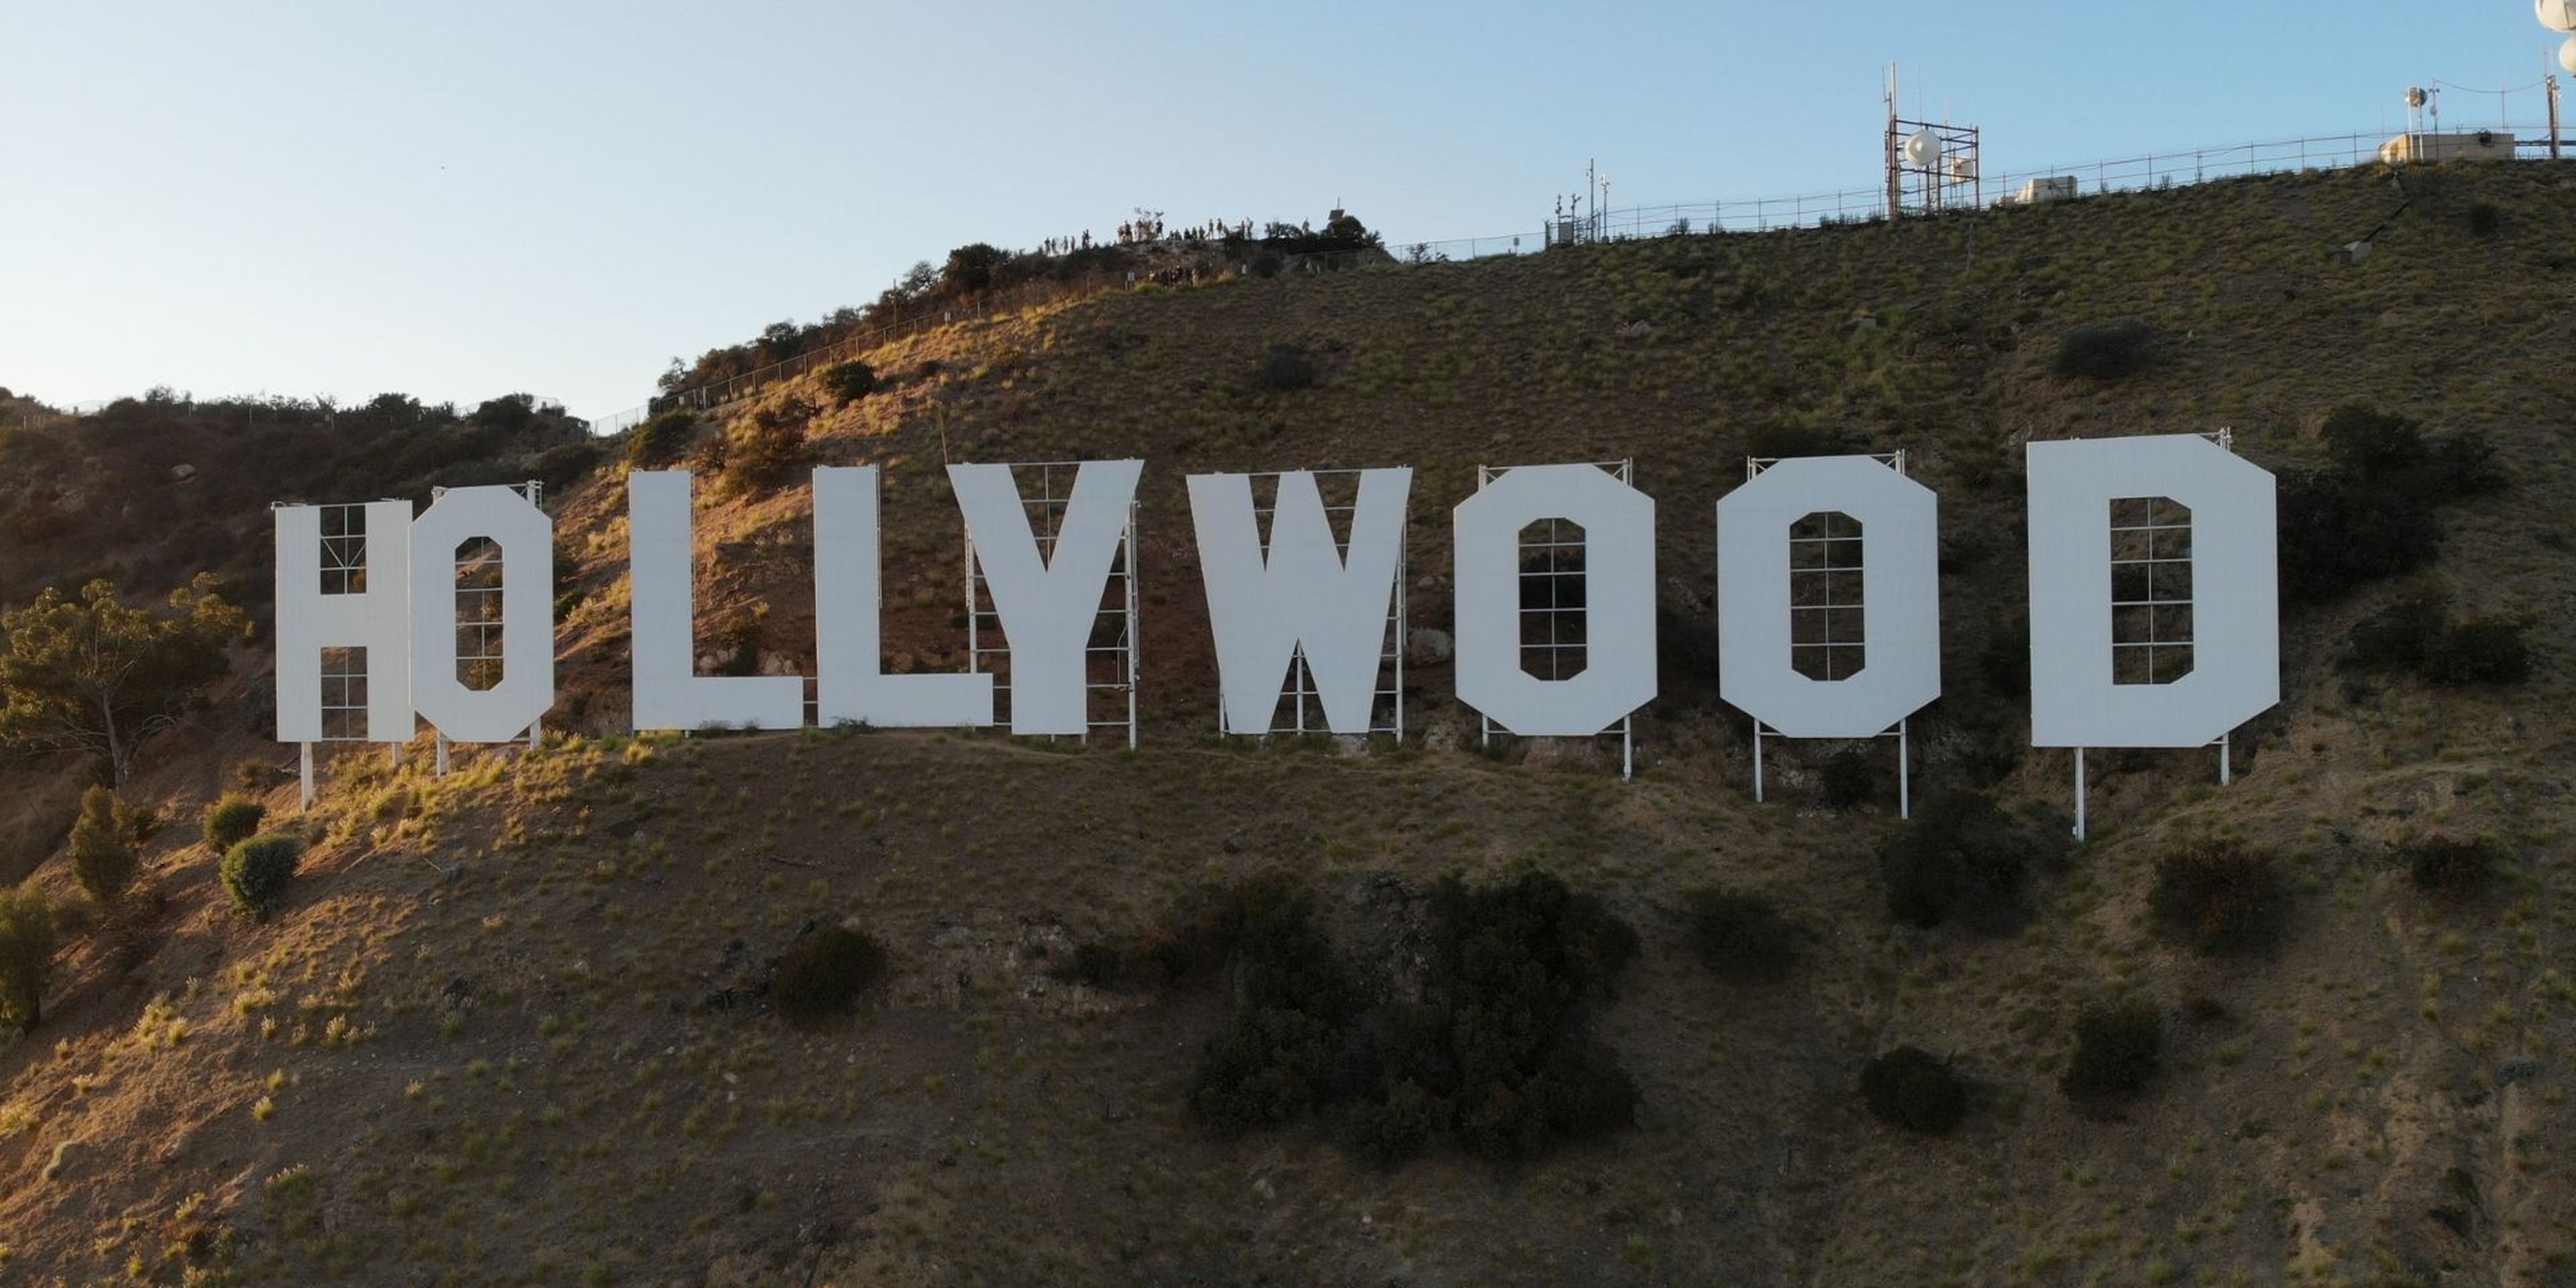 Los actores de Hollywood se niegan a que usen su mediante IA eternamente